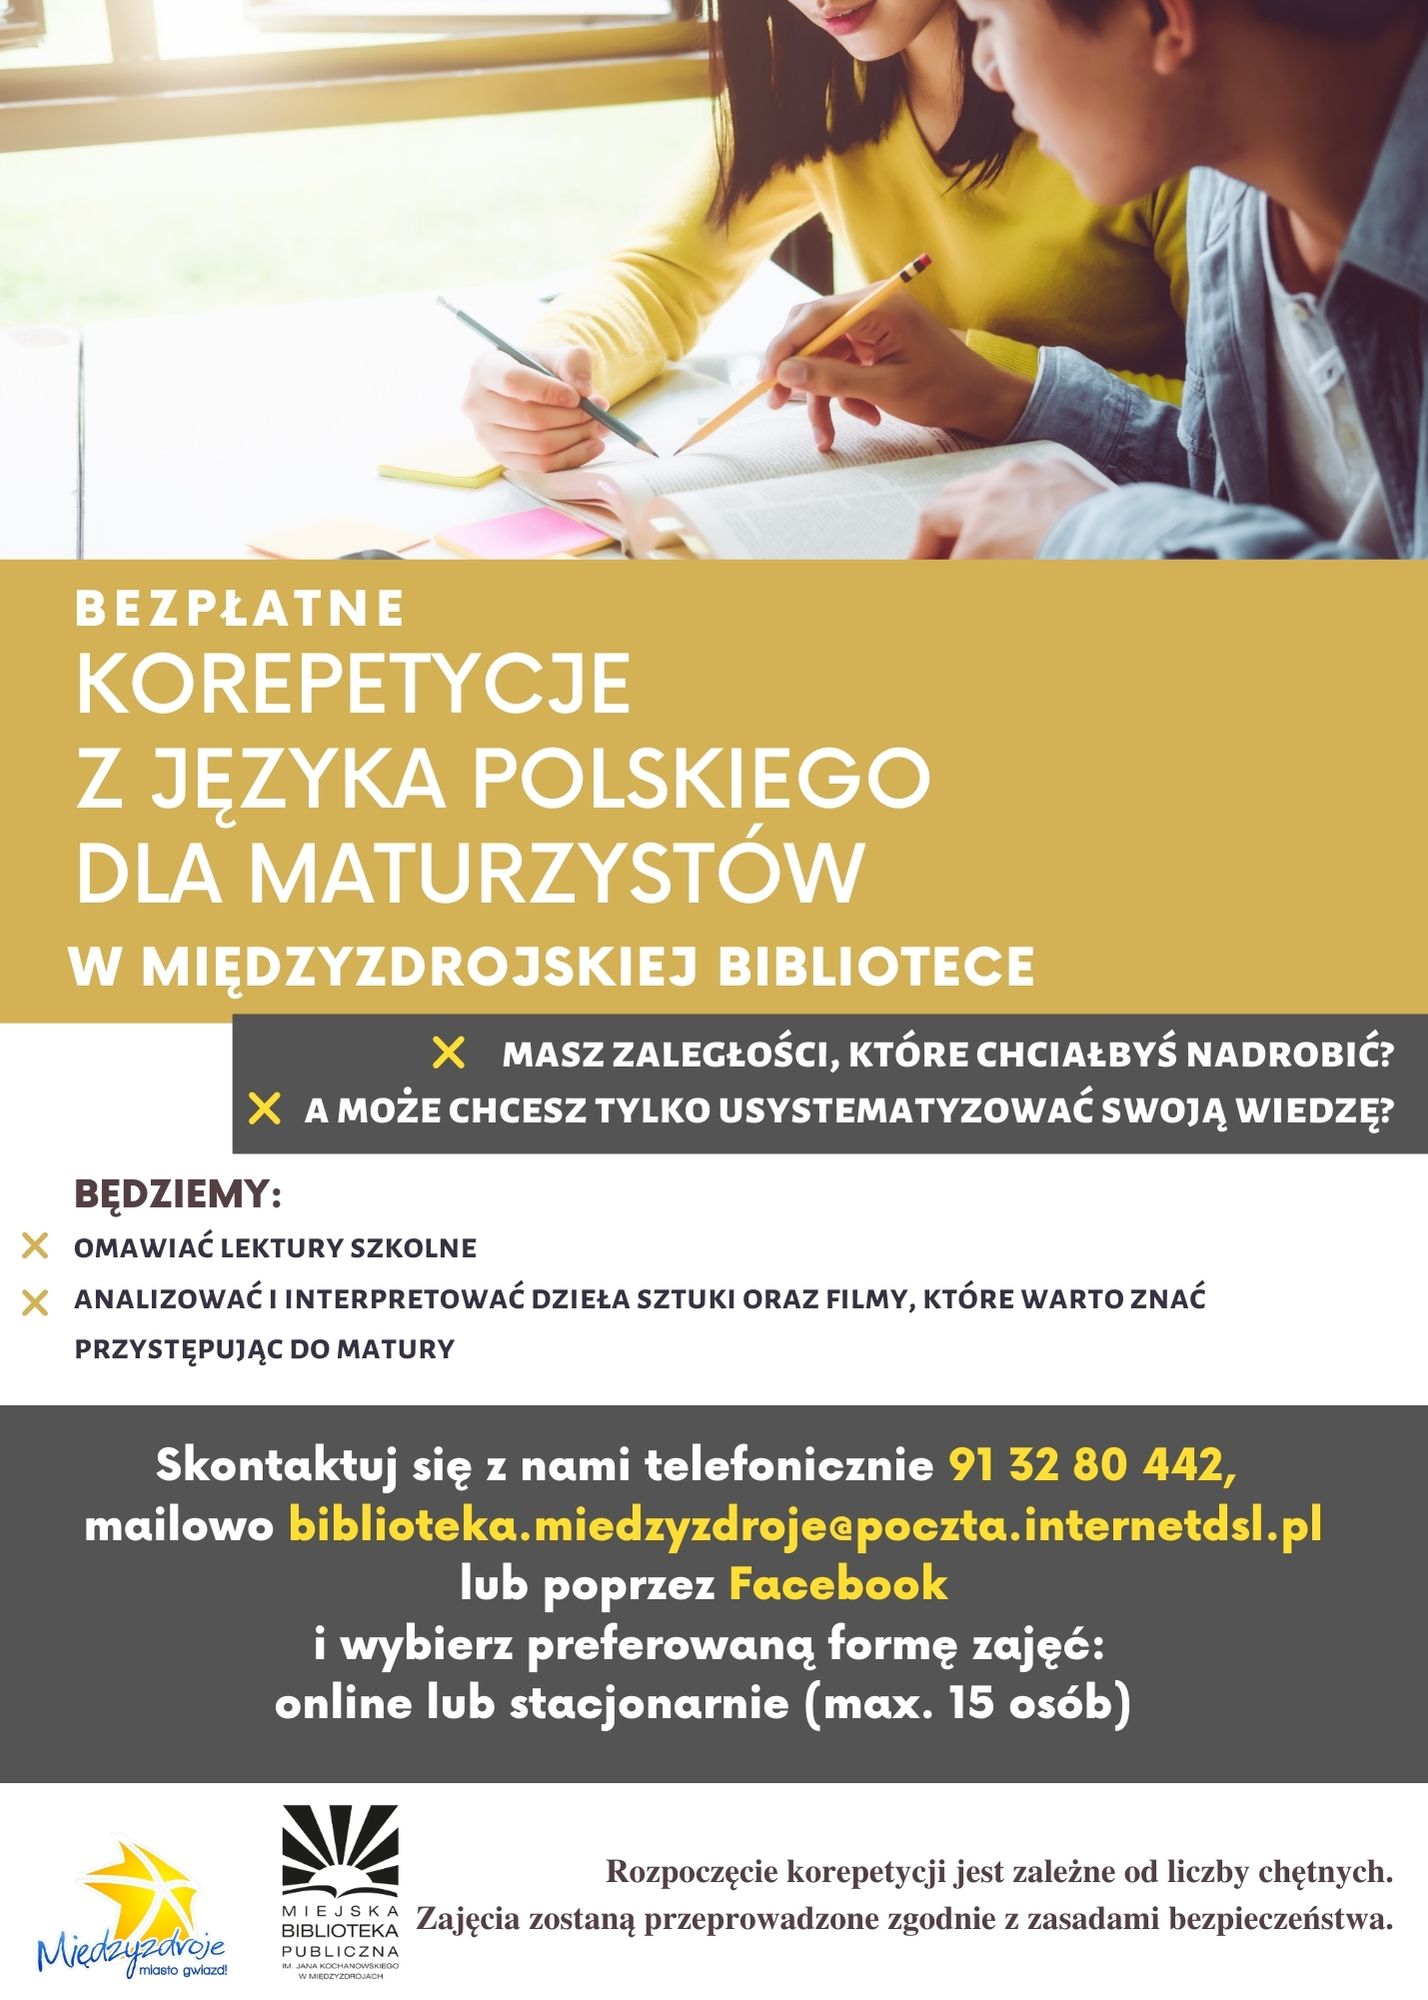 Bezpłatne korepetycje dla maturzystów z języka polskiego - zapowiedź